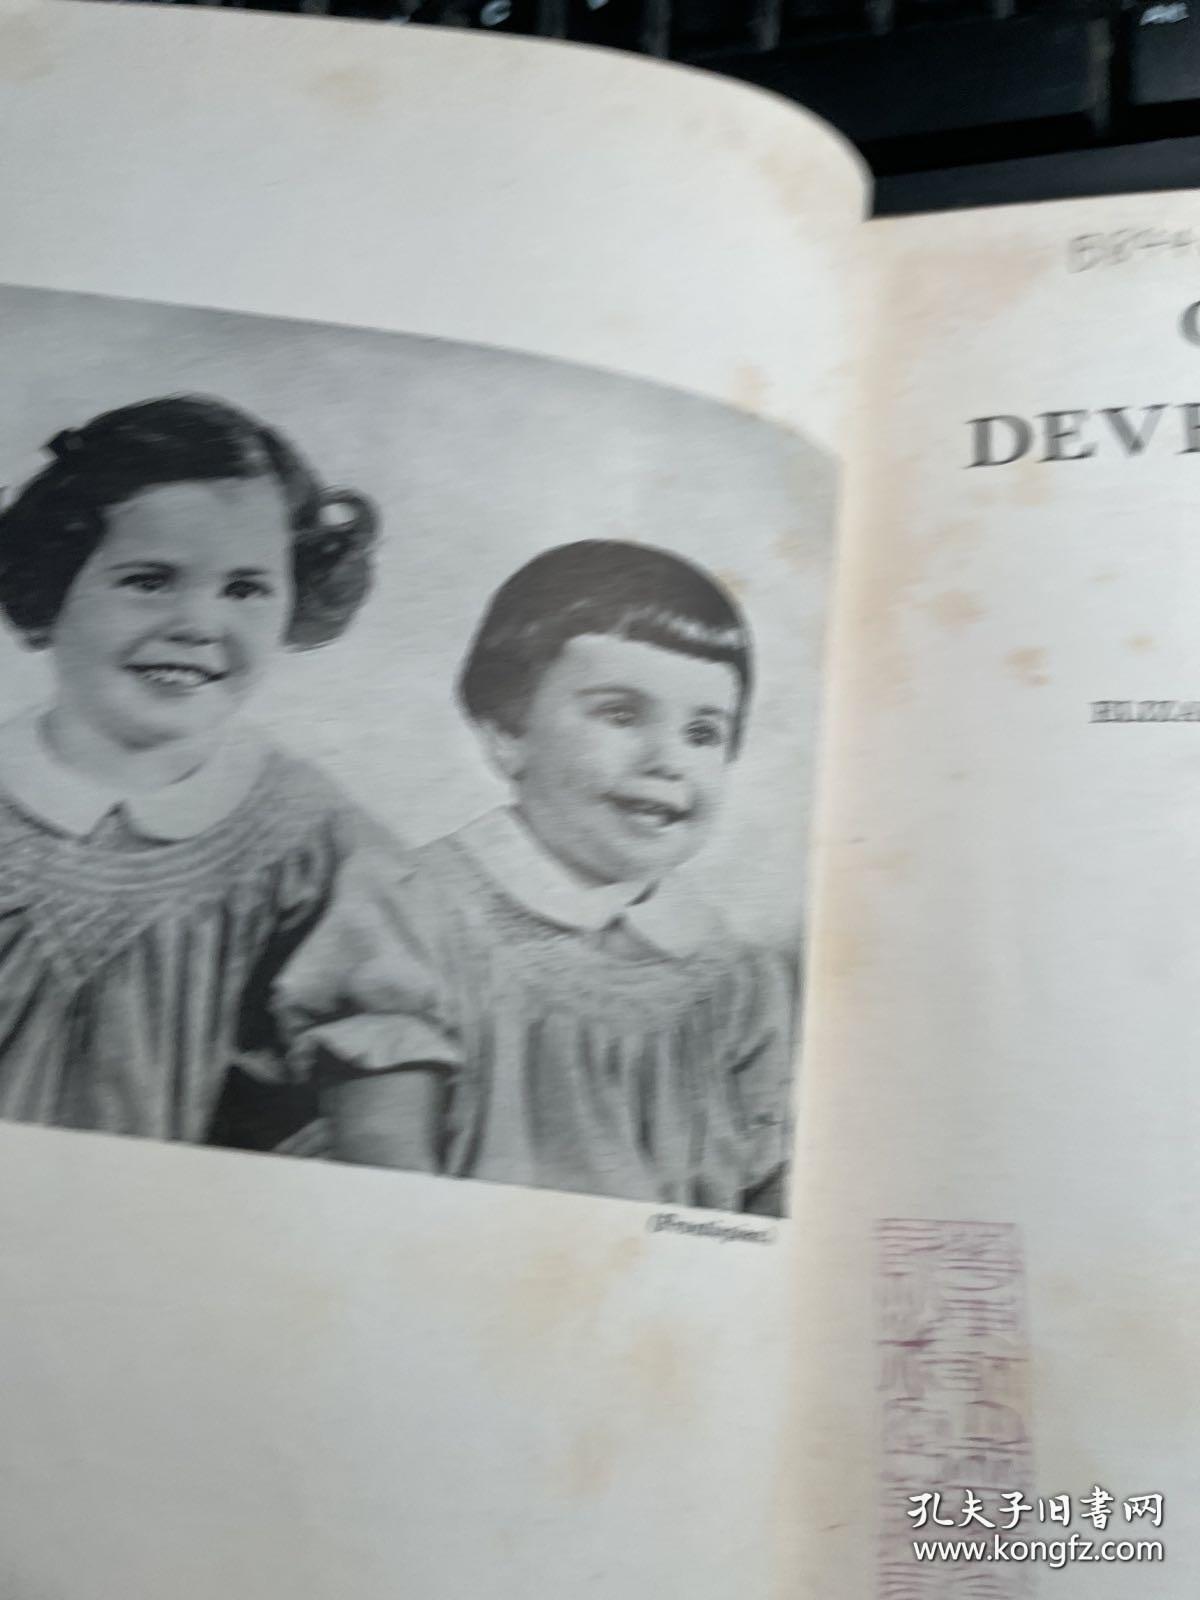 child development 儿童发育 精装版 馆藏 1942年版本 稀缺 保证正版 照片实拍 J62